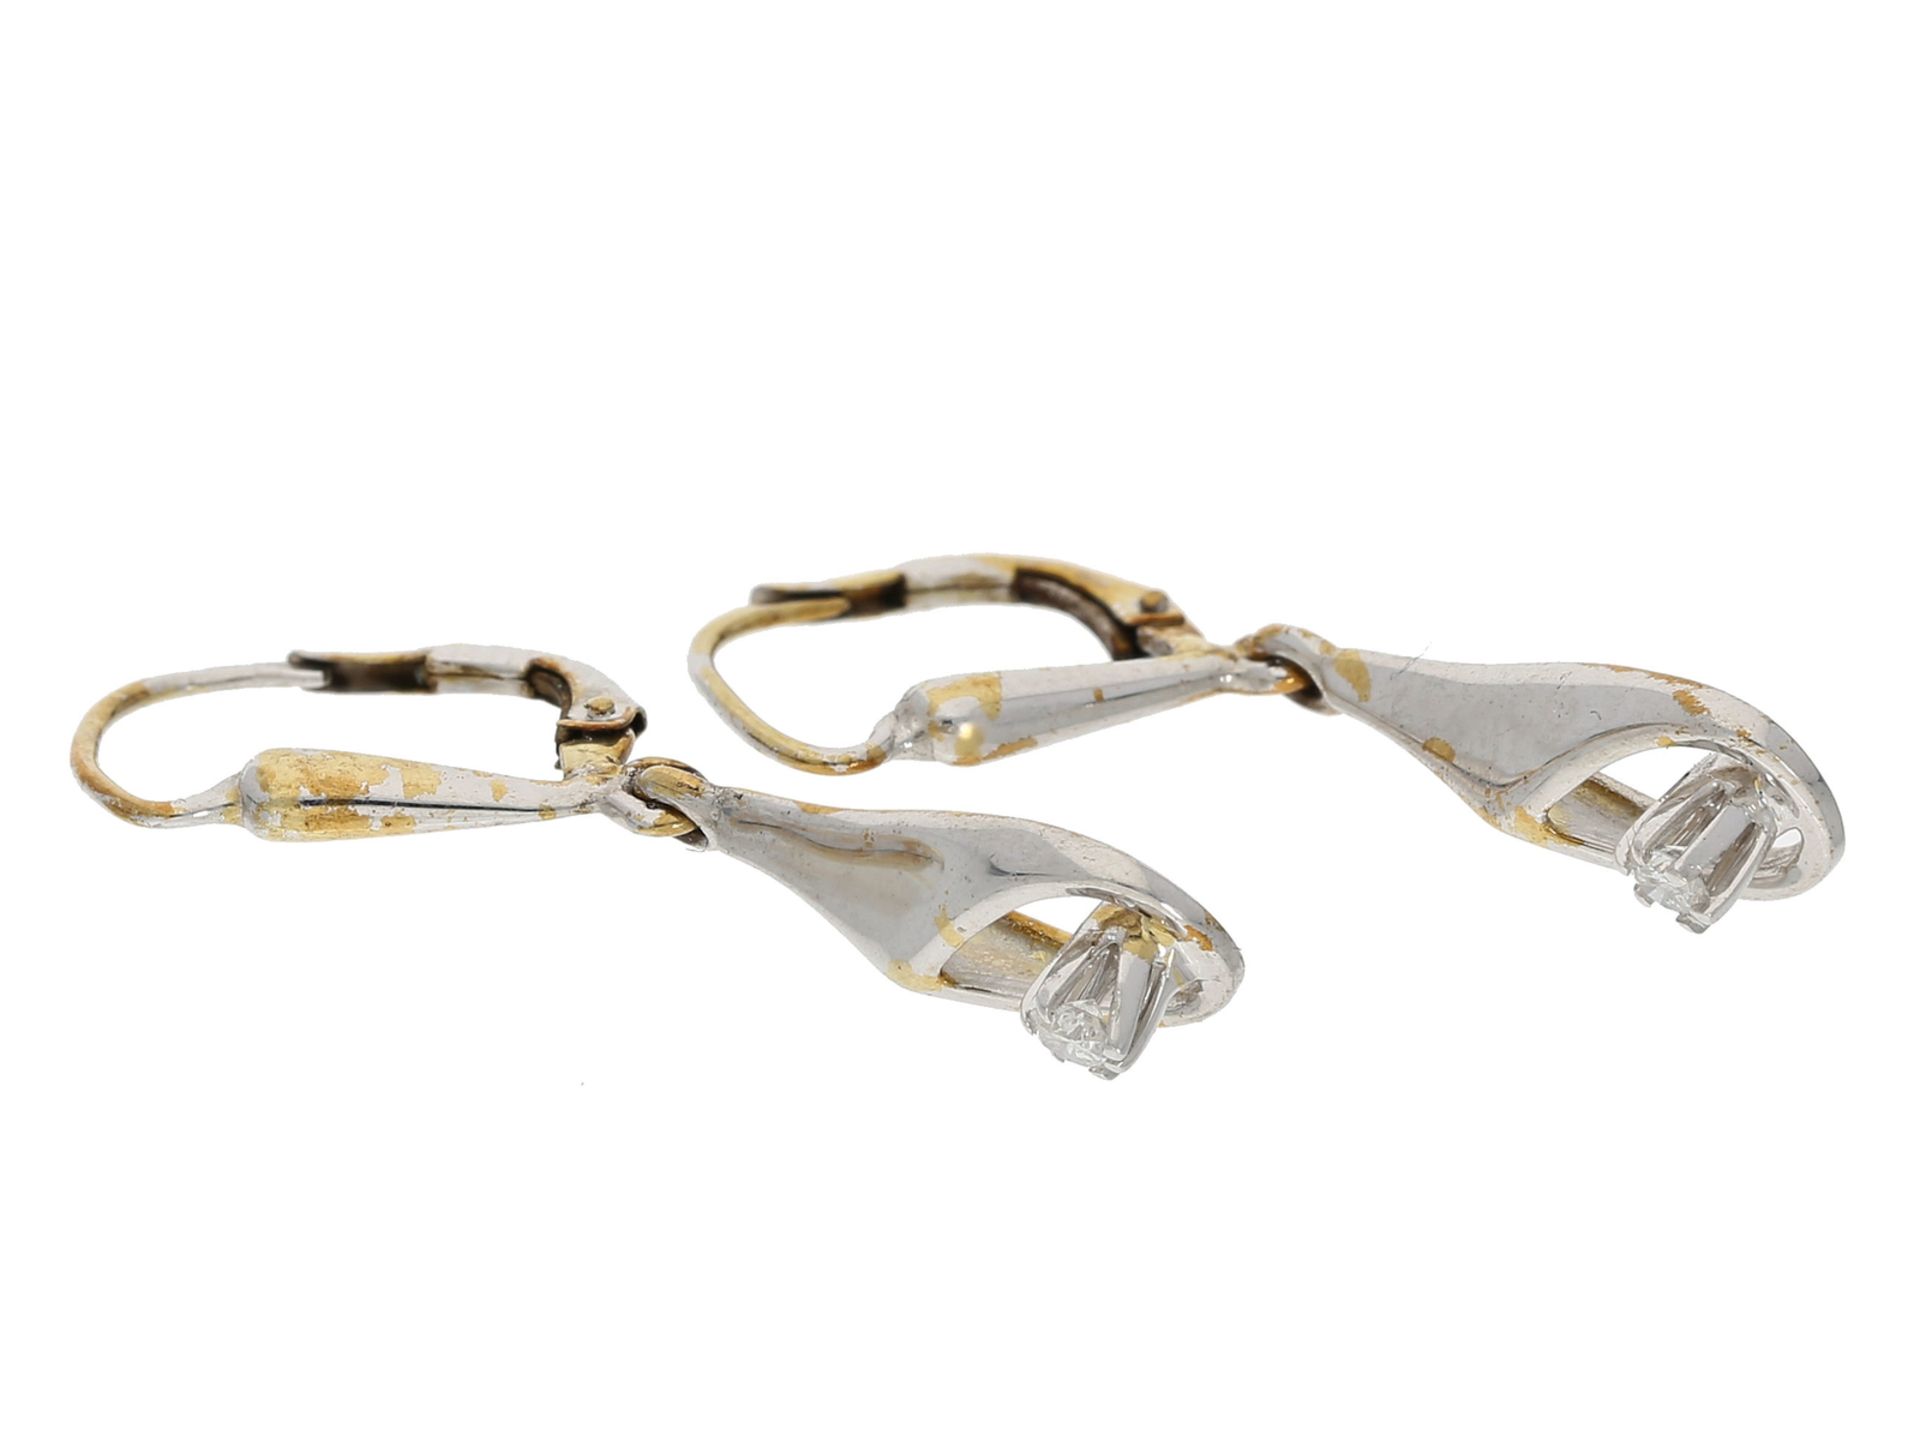 Ohrschmuck: dekorative Ohrhänger mit Brillanten von zusammen ca. 0,1ct, 14K GoldCa. 3